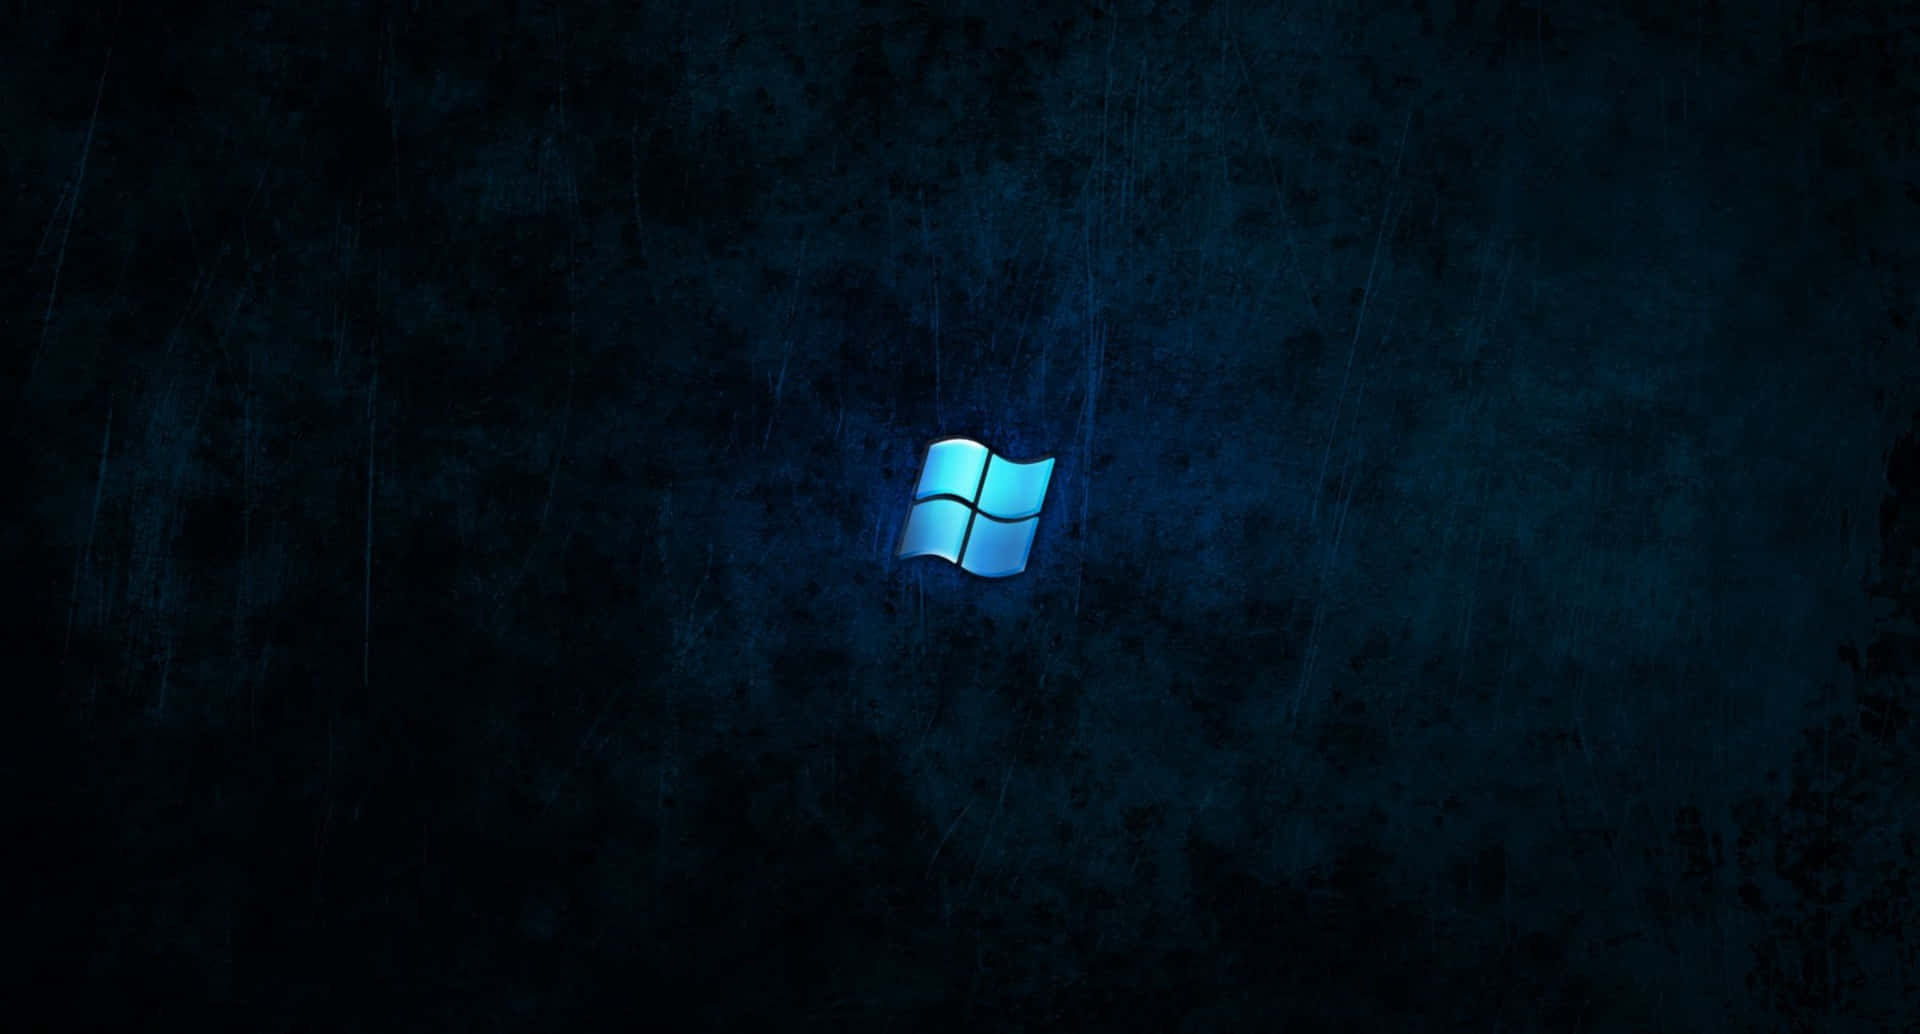 Windowslogo-hintergrundbilder In Hd Wallpaper